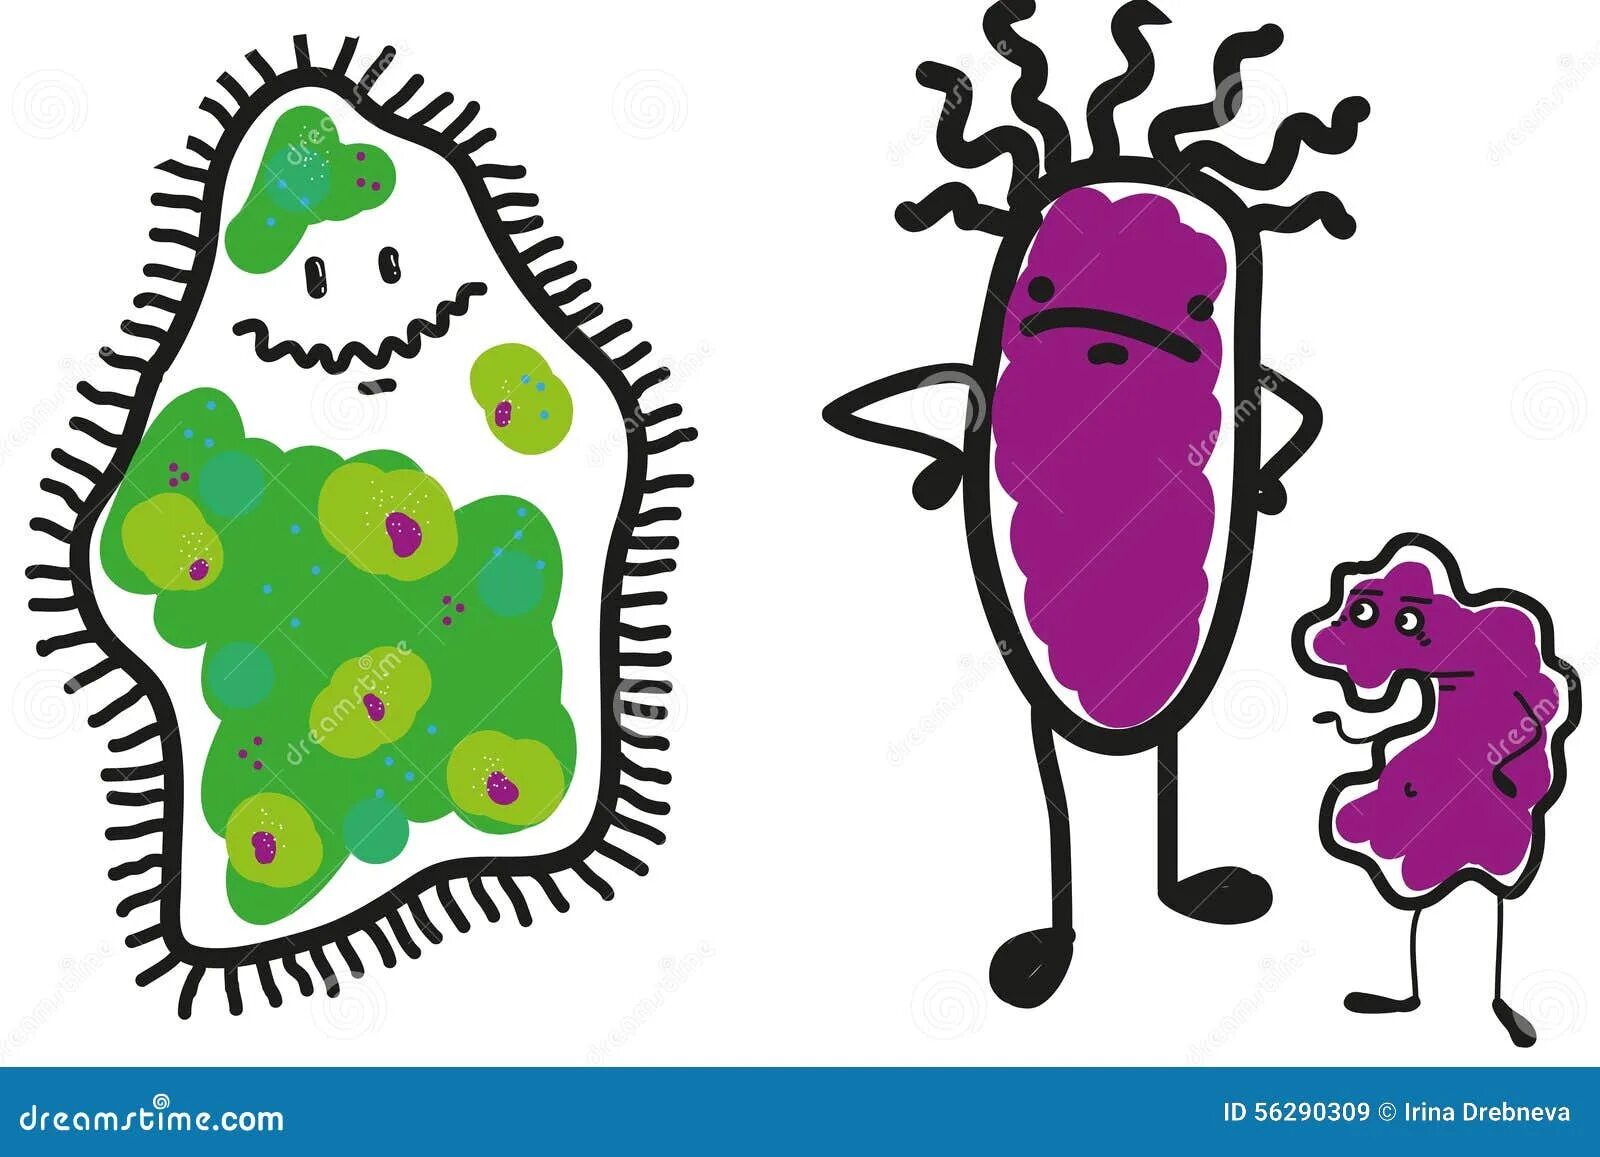 Бактерия 1 играть. Бактерии раскраска. Микробы раскраска. Раскраска микробы и бактерии для детей. Бактерия из бэкрумс.